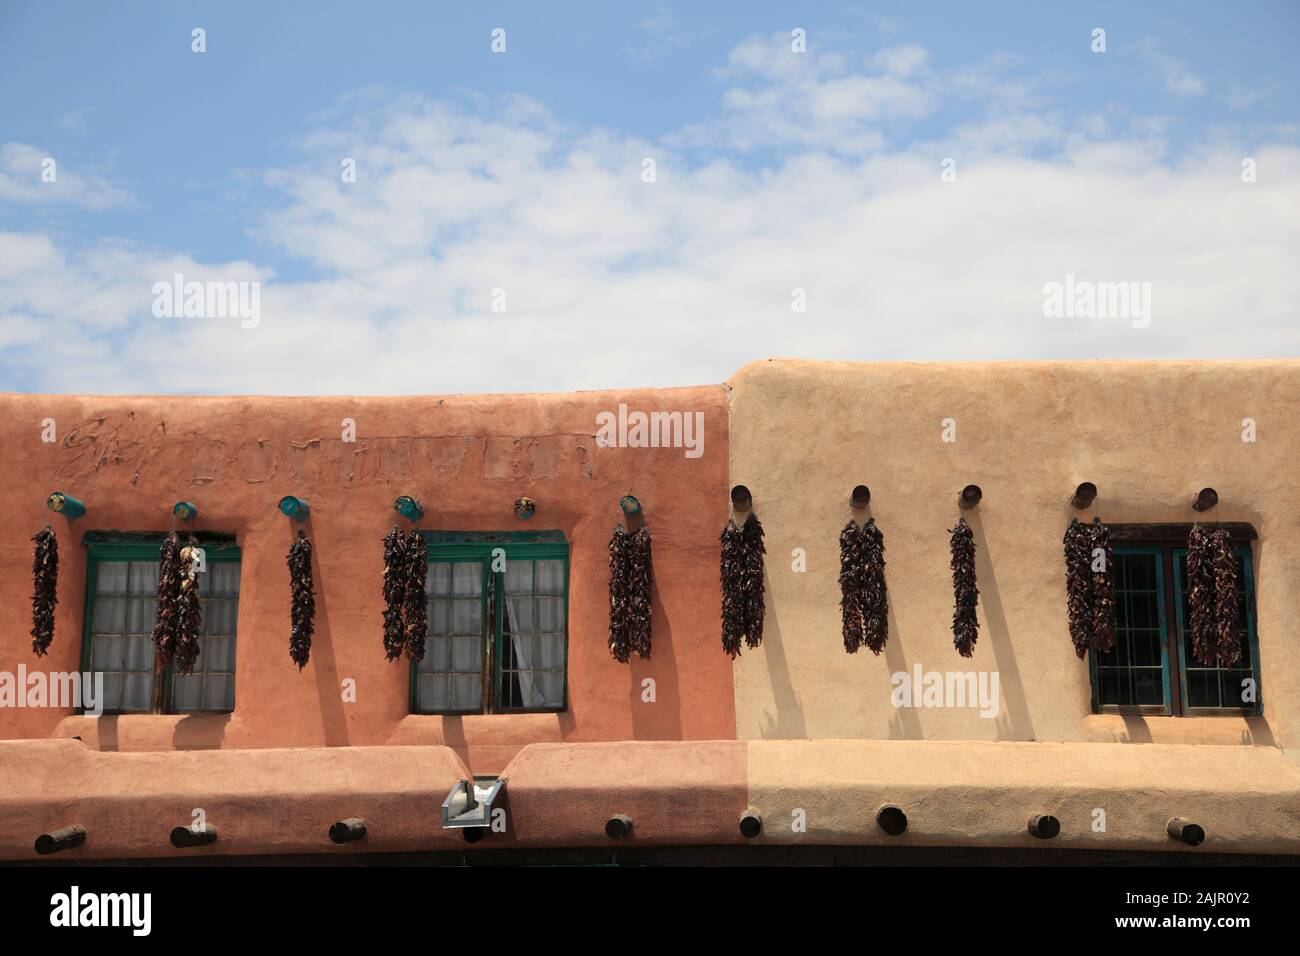 Adobe Architecture, Dried Chilis, Chili Ristras, Taos Plaza, Historic District, Taos, New Mexico, Usa Foto Stock